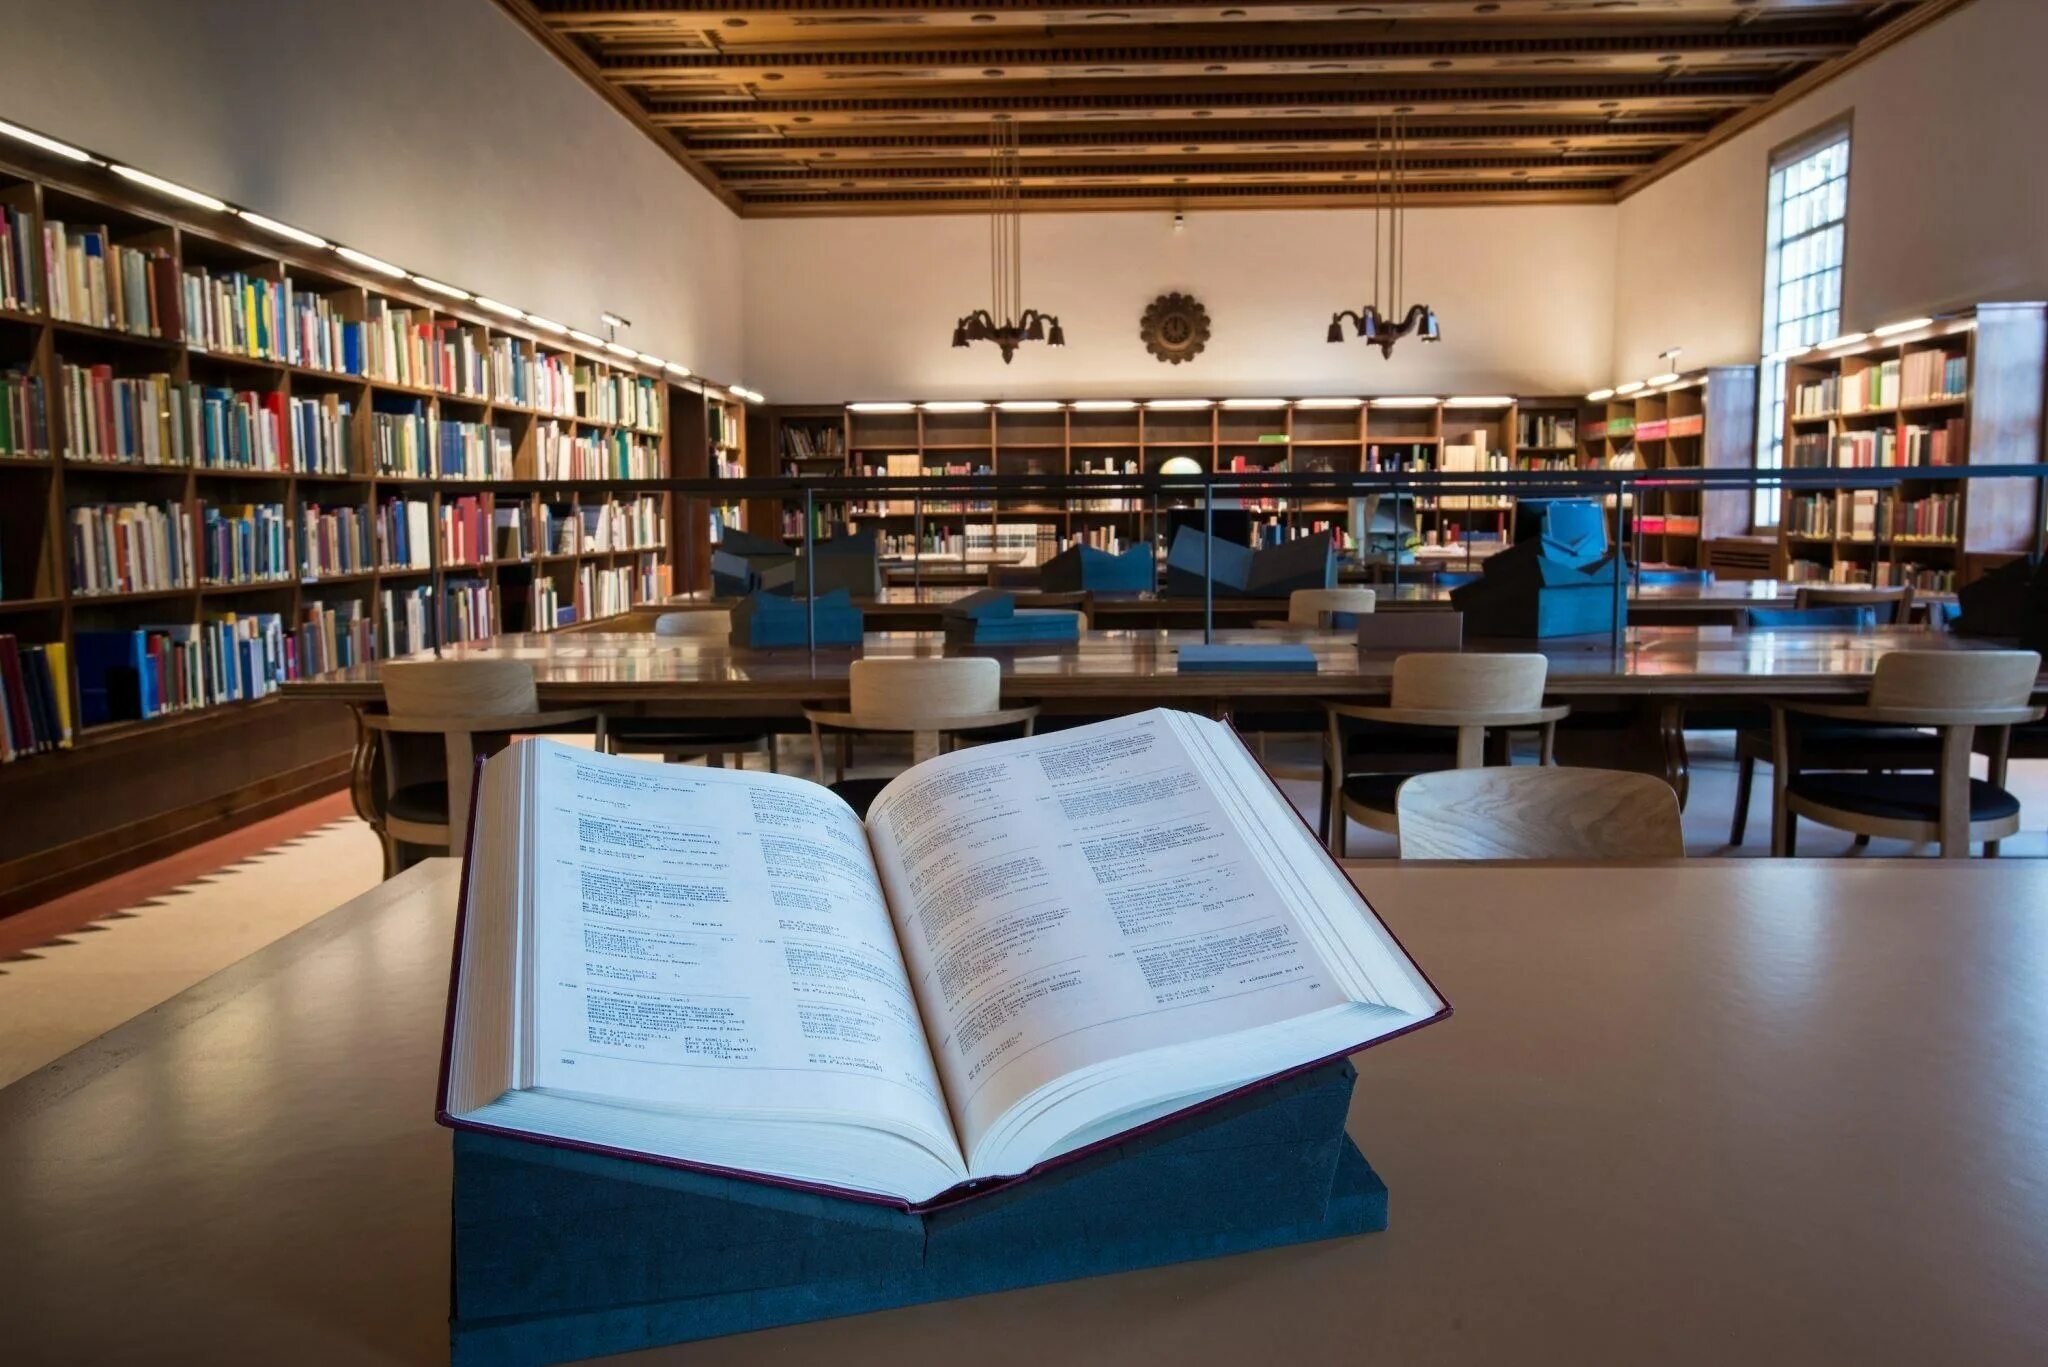 Сайт читальный зал. Оксфордский университет библиотека. Йельский университет библиотека. Библиотеки музеи Оксфордского университета. Читальный зал в библиотеке.